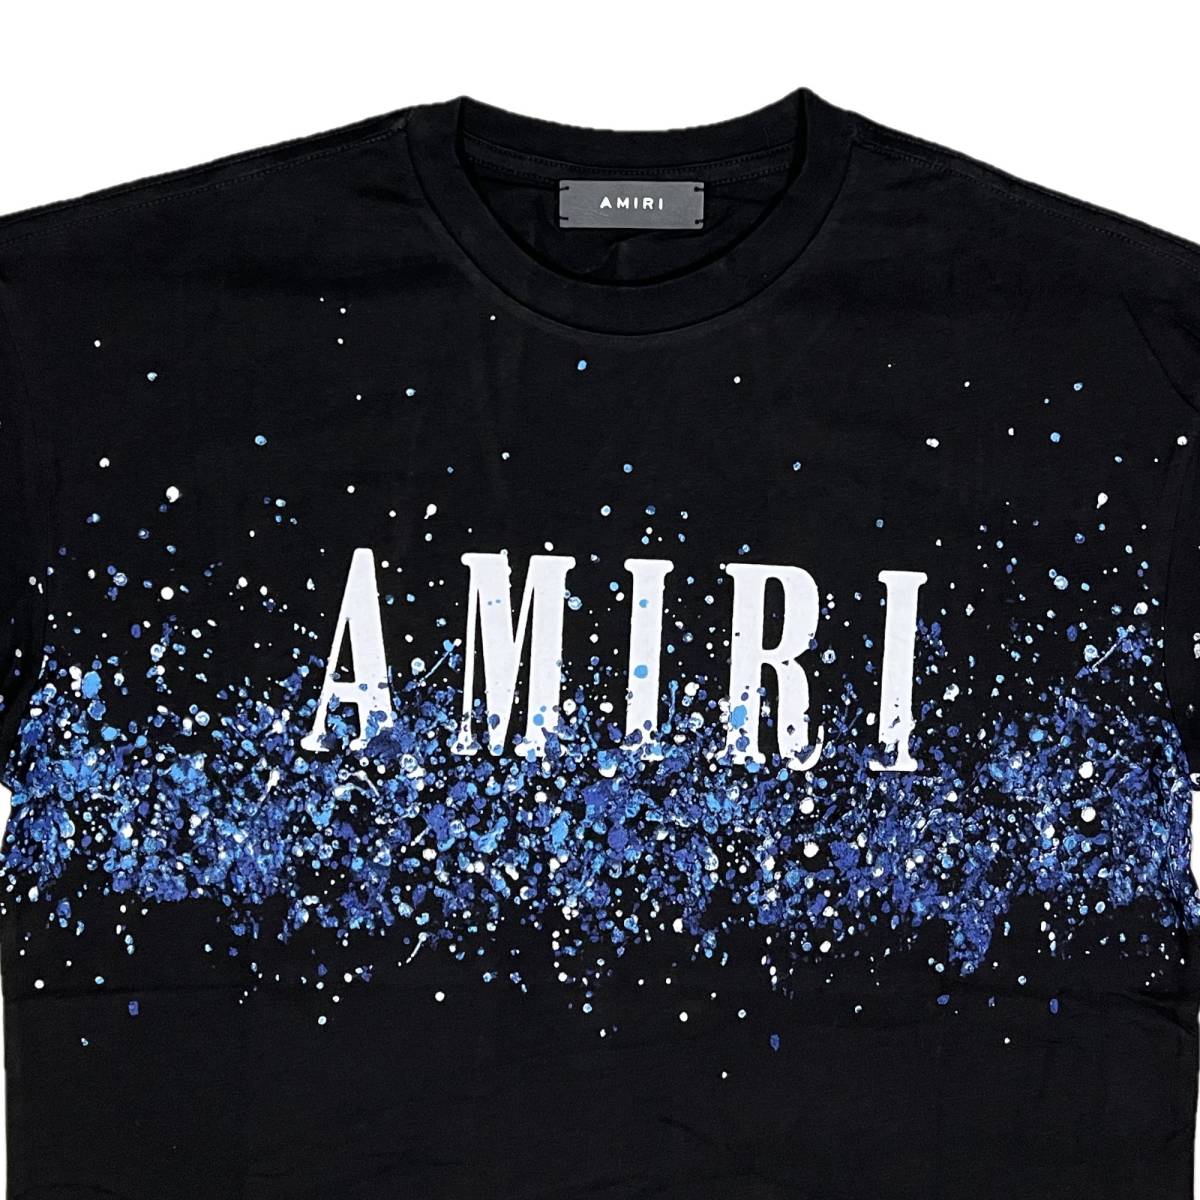 最高級 [並行輸入品] AMIRI (XL) (ブラック) Tシャツ 半袖 ブリーチ